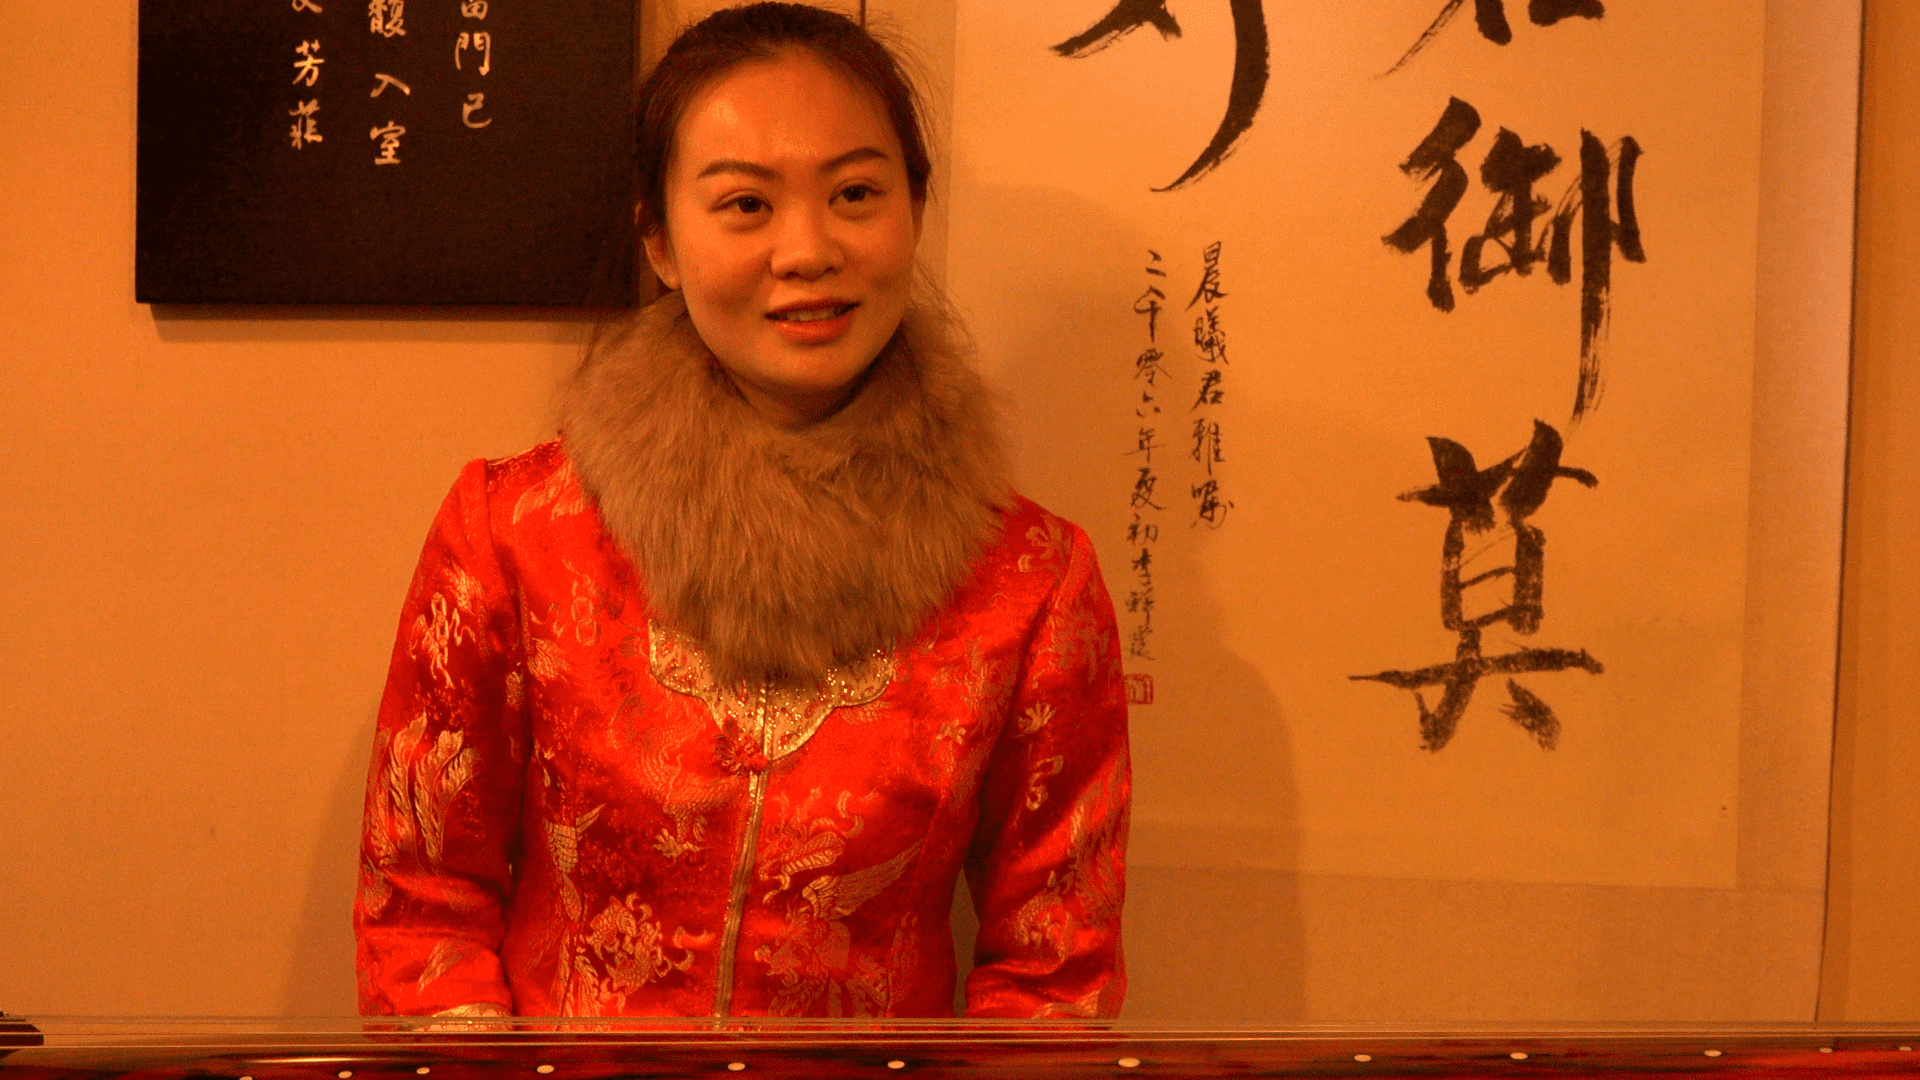 Interview Guzheng